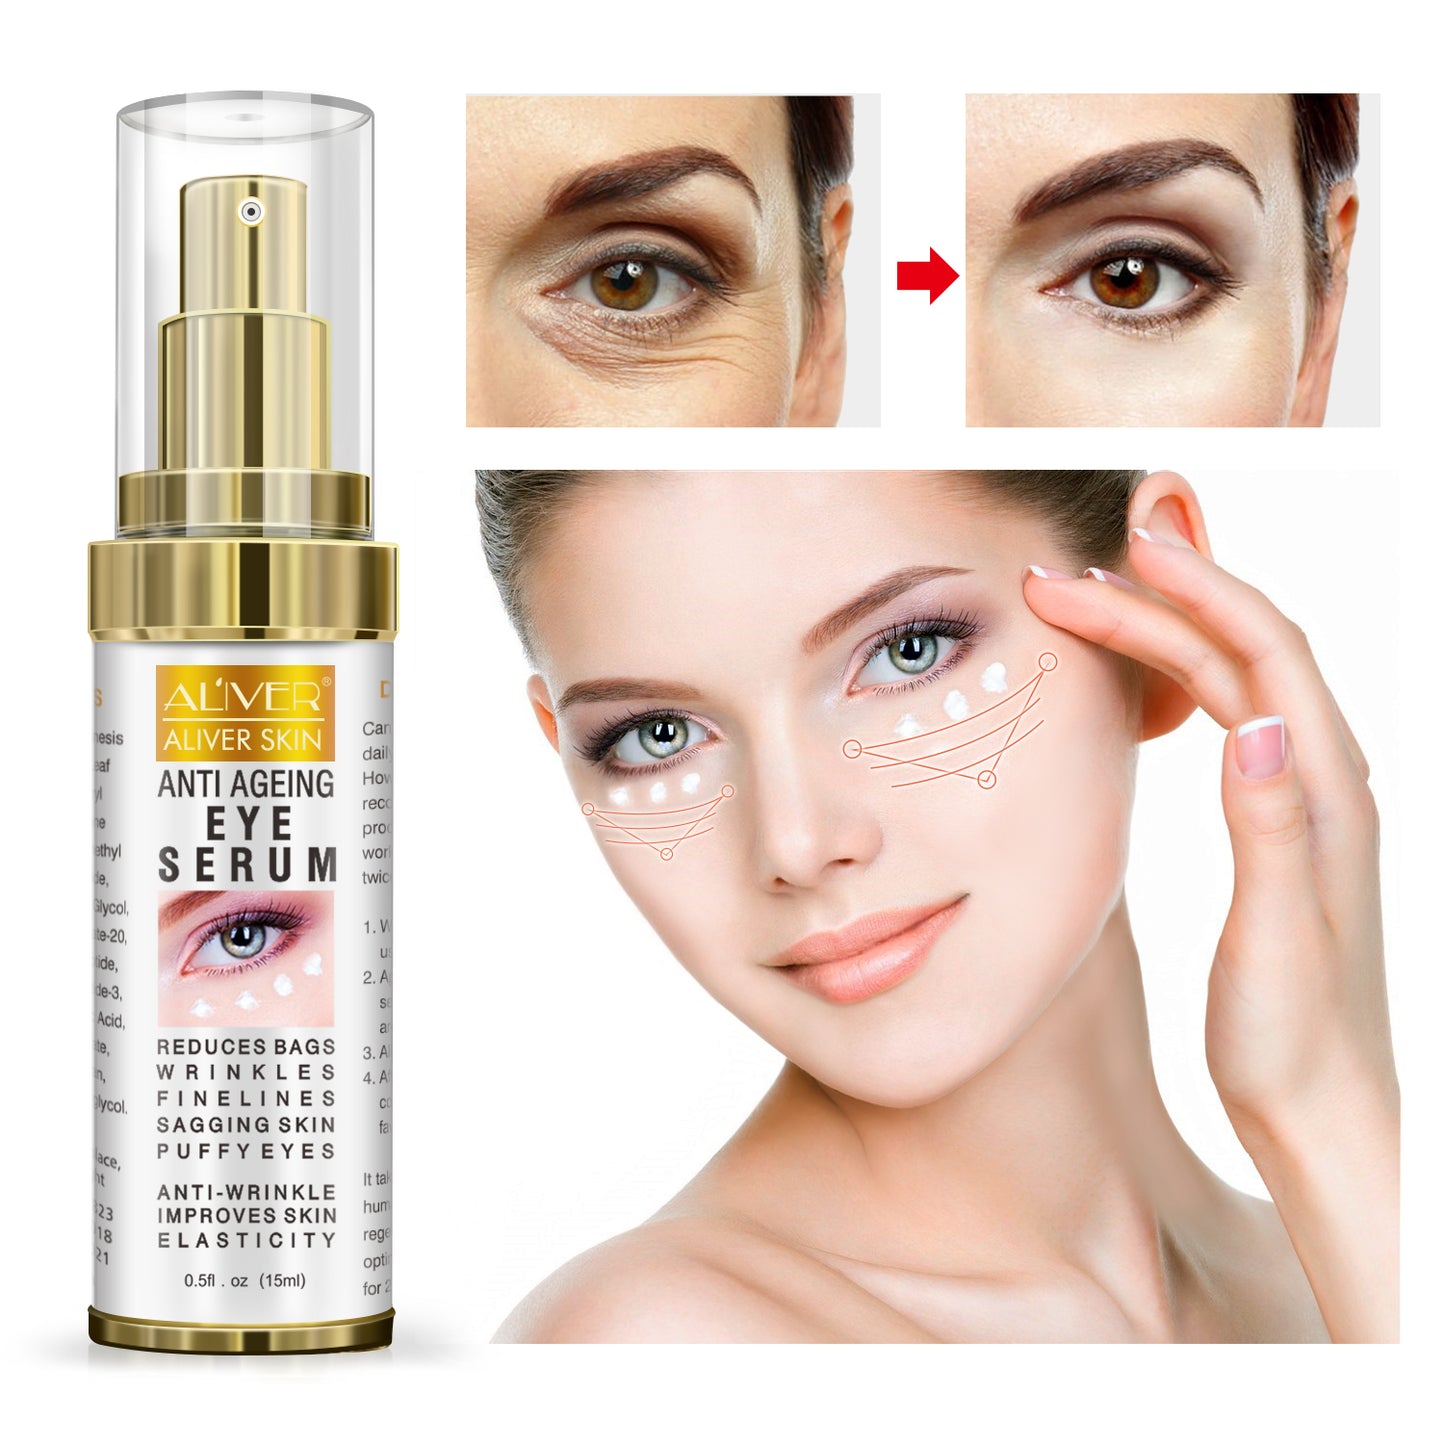 Aliver Anti Ageing Eye Serum / Eye Cream for Dark Circles, Puffiness & Crows Feet - Anti Wrinkle Eye Serum